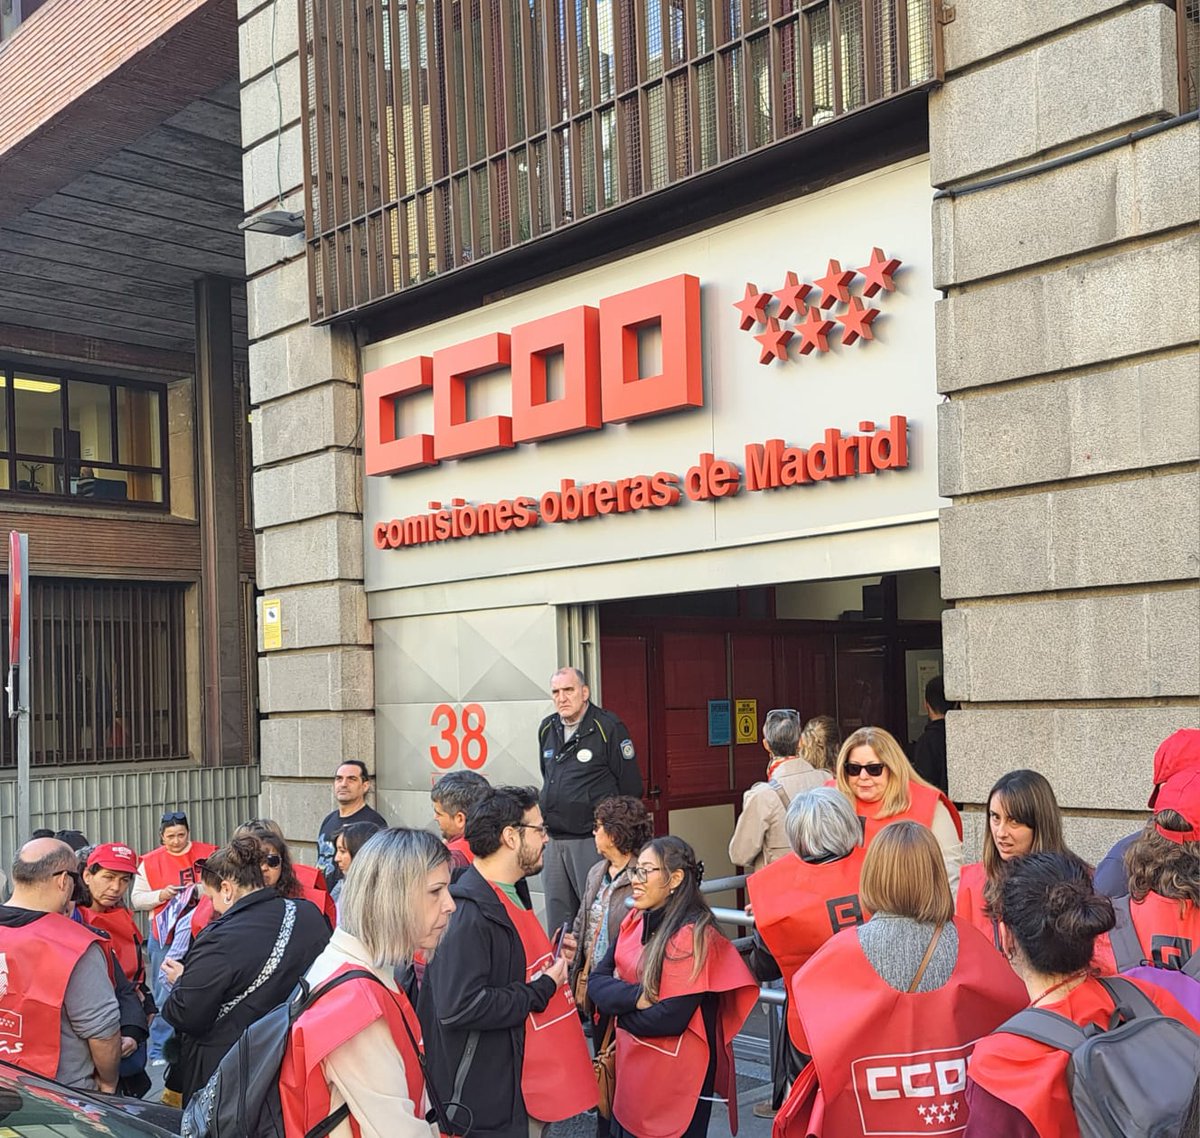 📧Porque los y las trabajadoras de los hospitales concesionados y privados de Madrid necesitan su atención urgente. 

#EsLaHora de mejorar las condiciones laborales y acabar con los abusos a los y las profesionales de la #SanidadPrivada

#CumplanElConvenio #CCOOSeMueve